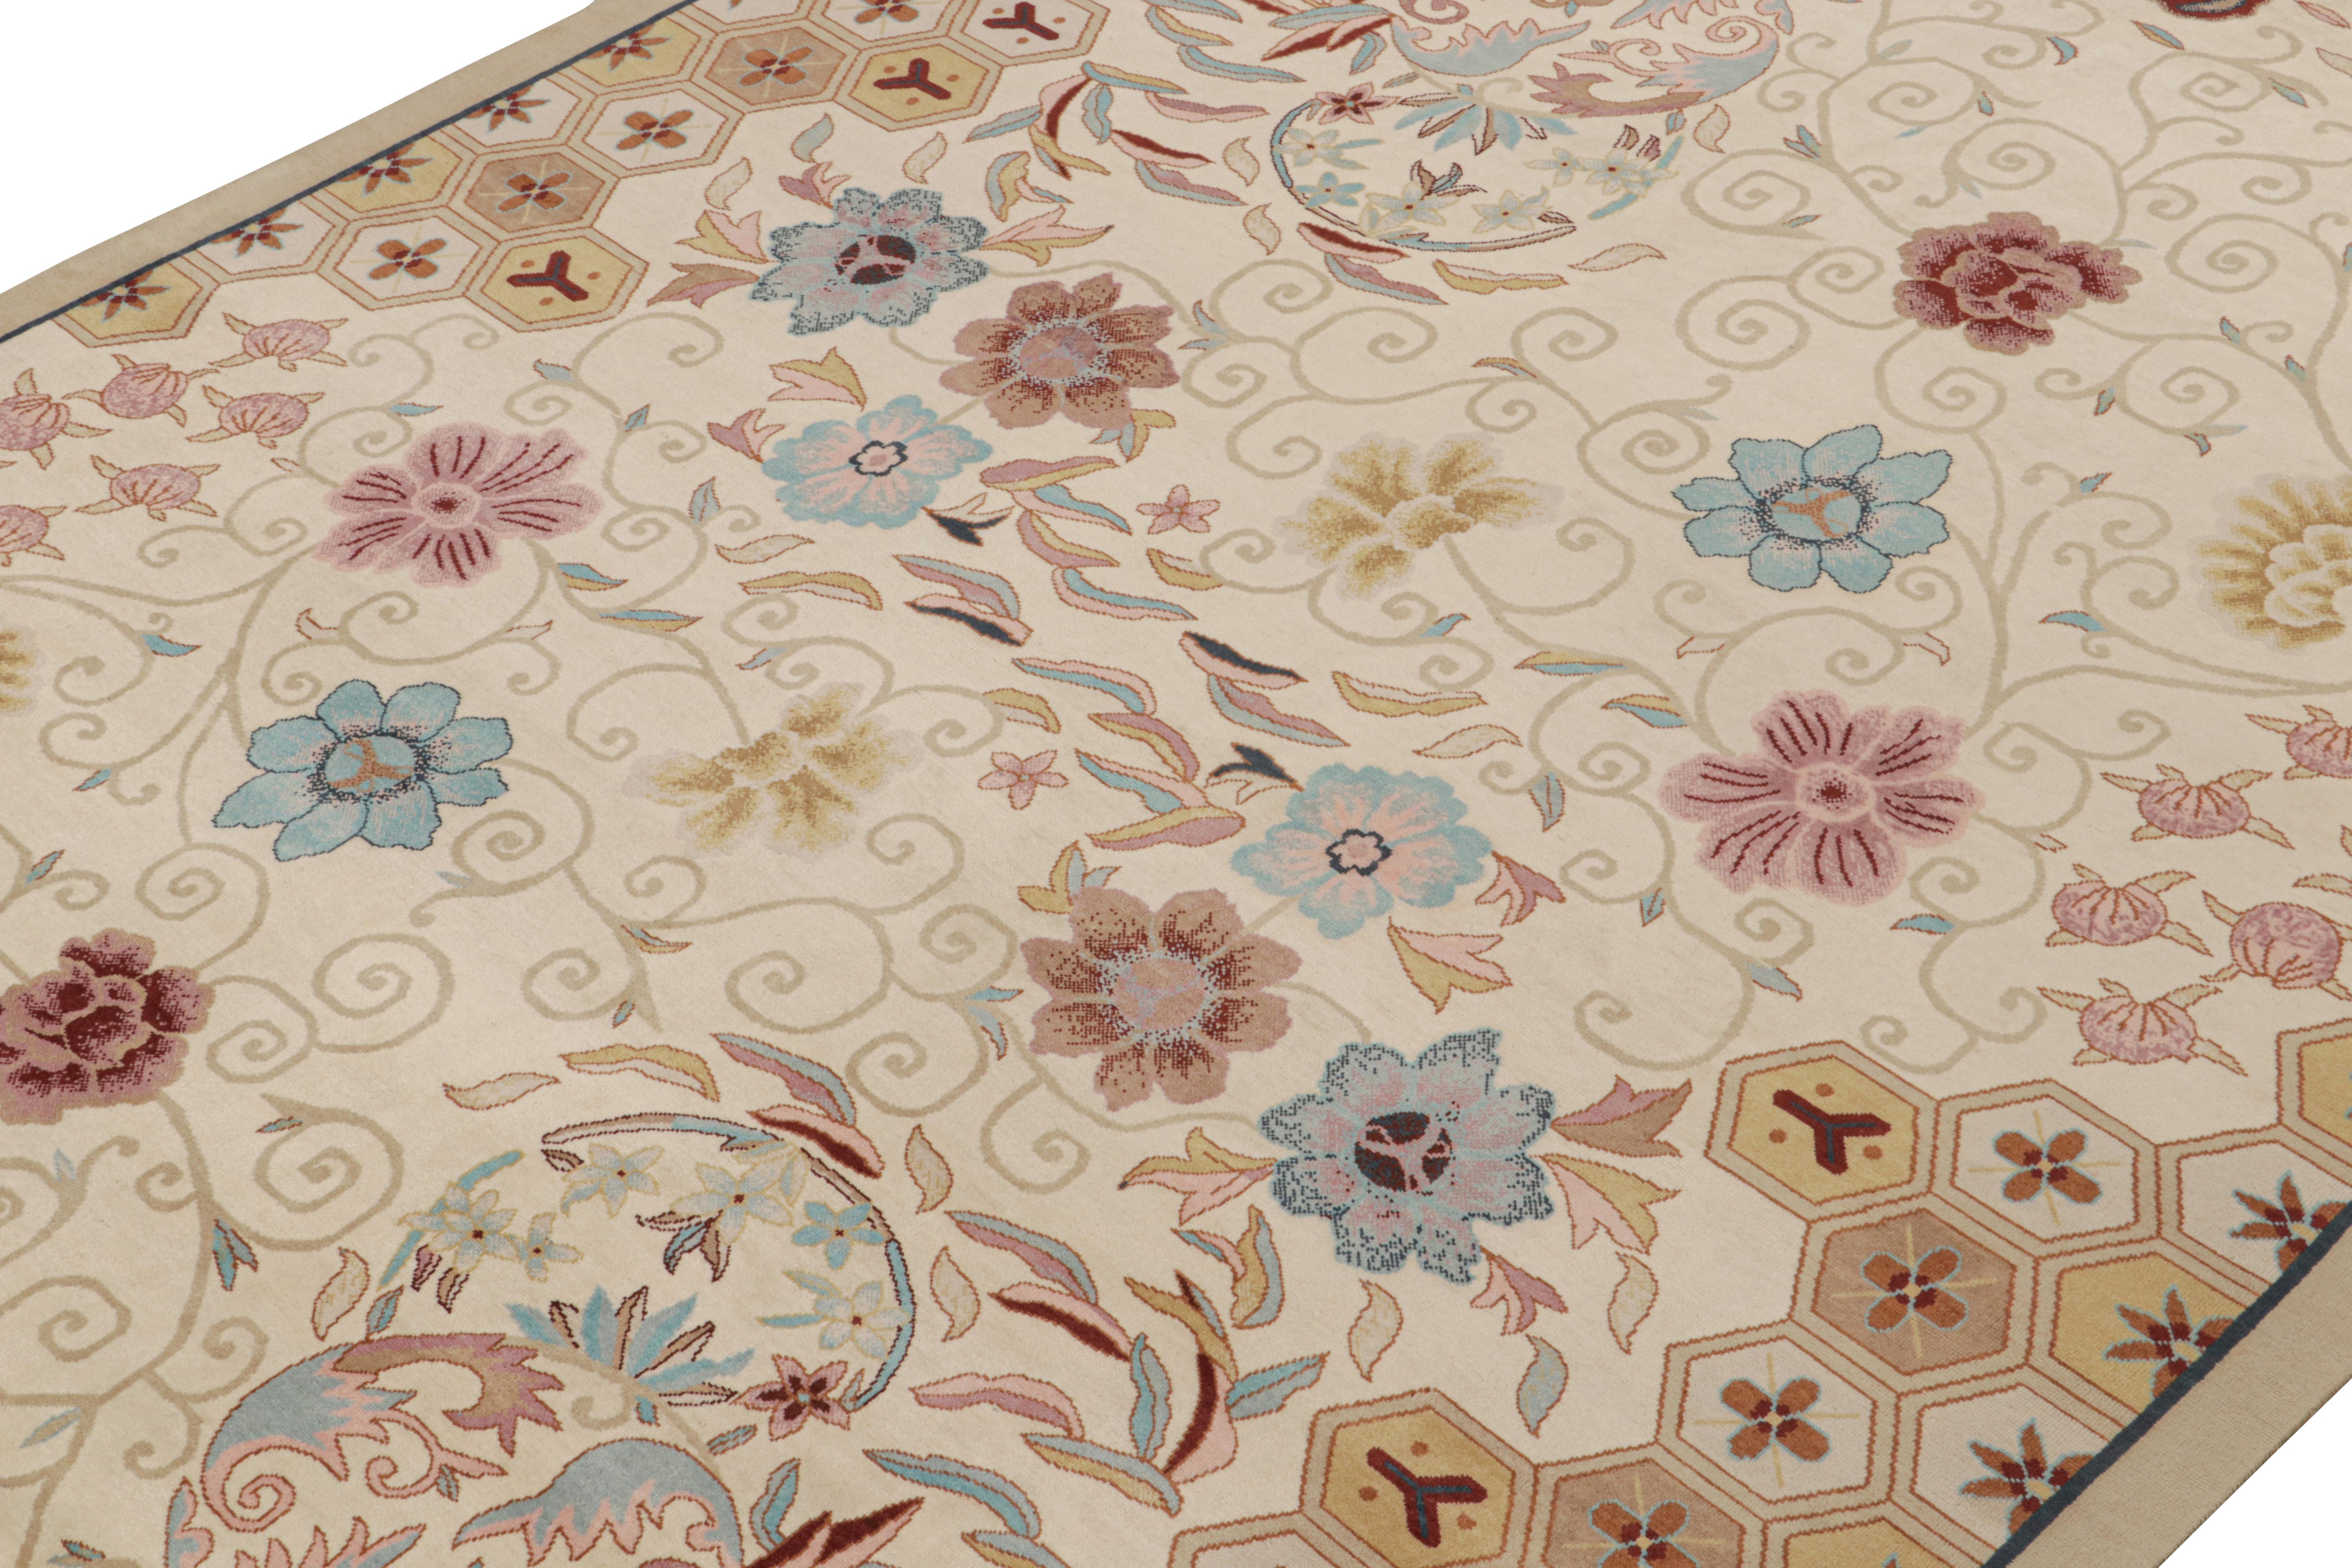 Dieser 10x14 große Teppich ist eine aufregende neue Ergänzung der Art Deco-Teppichkollektion von Rug & Kilim. 

Über das Design: 

Dieser moderne, handgeknüpfte Wollteppich erinnert an den chinesischen Art-Déco-Stil der 1920er Jahre. Der Teppich hat